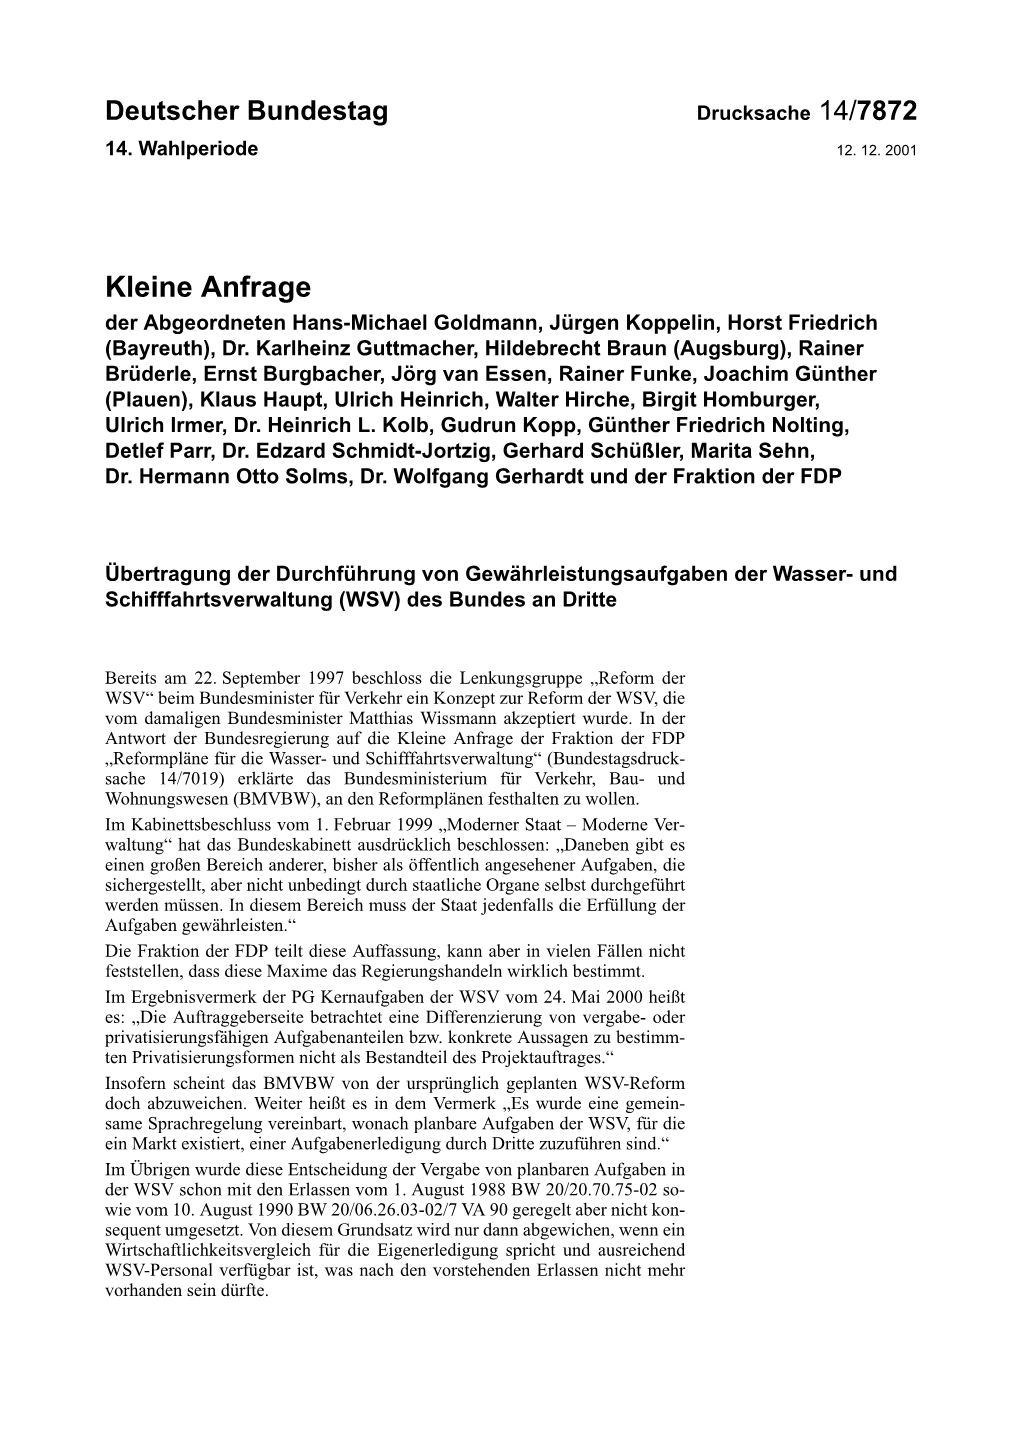 Kleine Anfrage Der Abgeordneten Hans-Michael Goldmann, Jürgen Koppelin, Horst Friedrich (Bayreuth), Dr